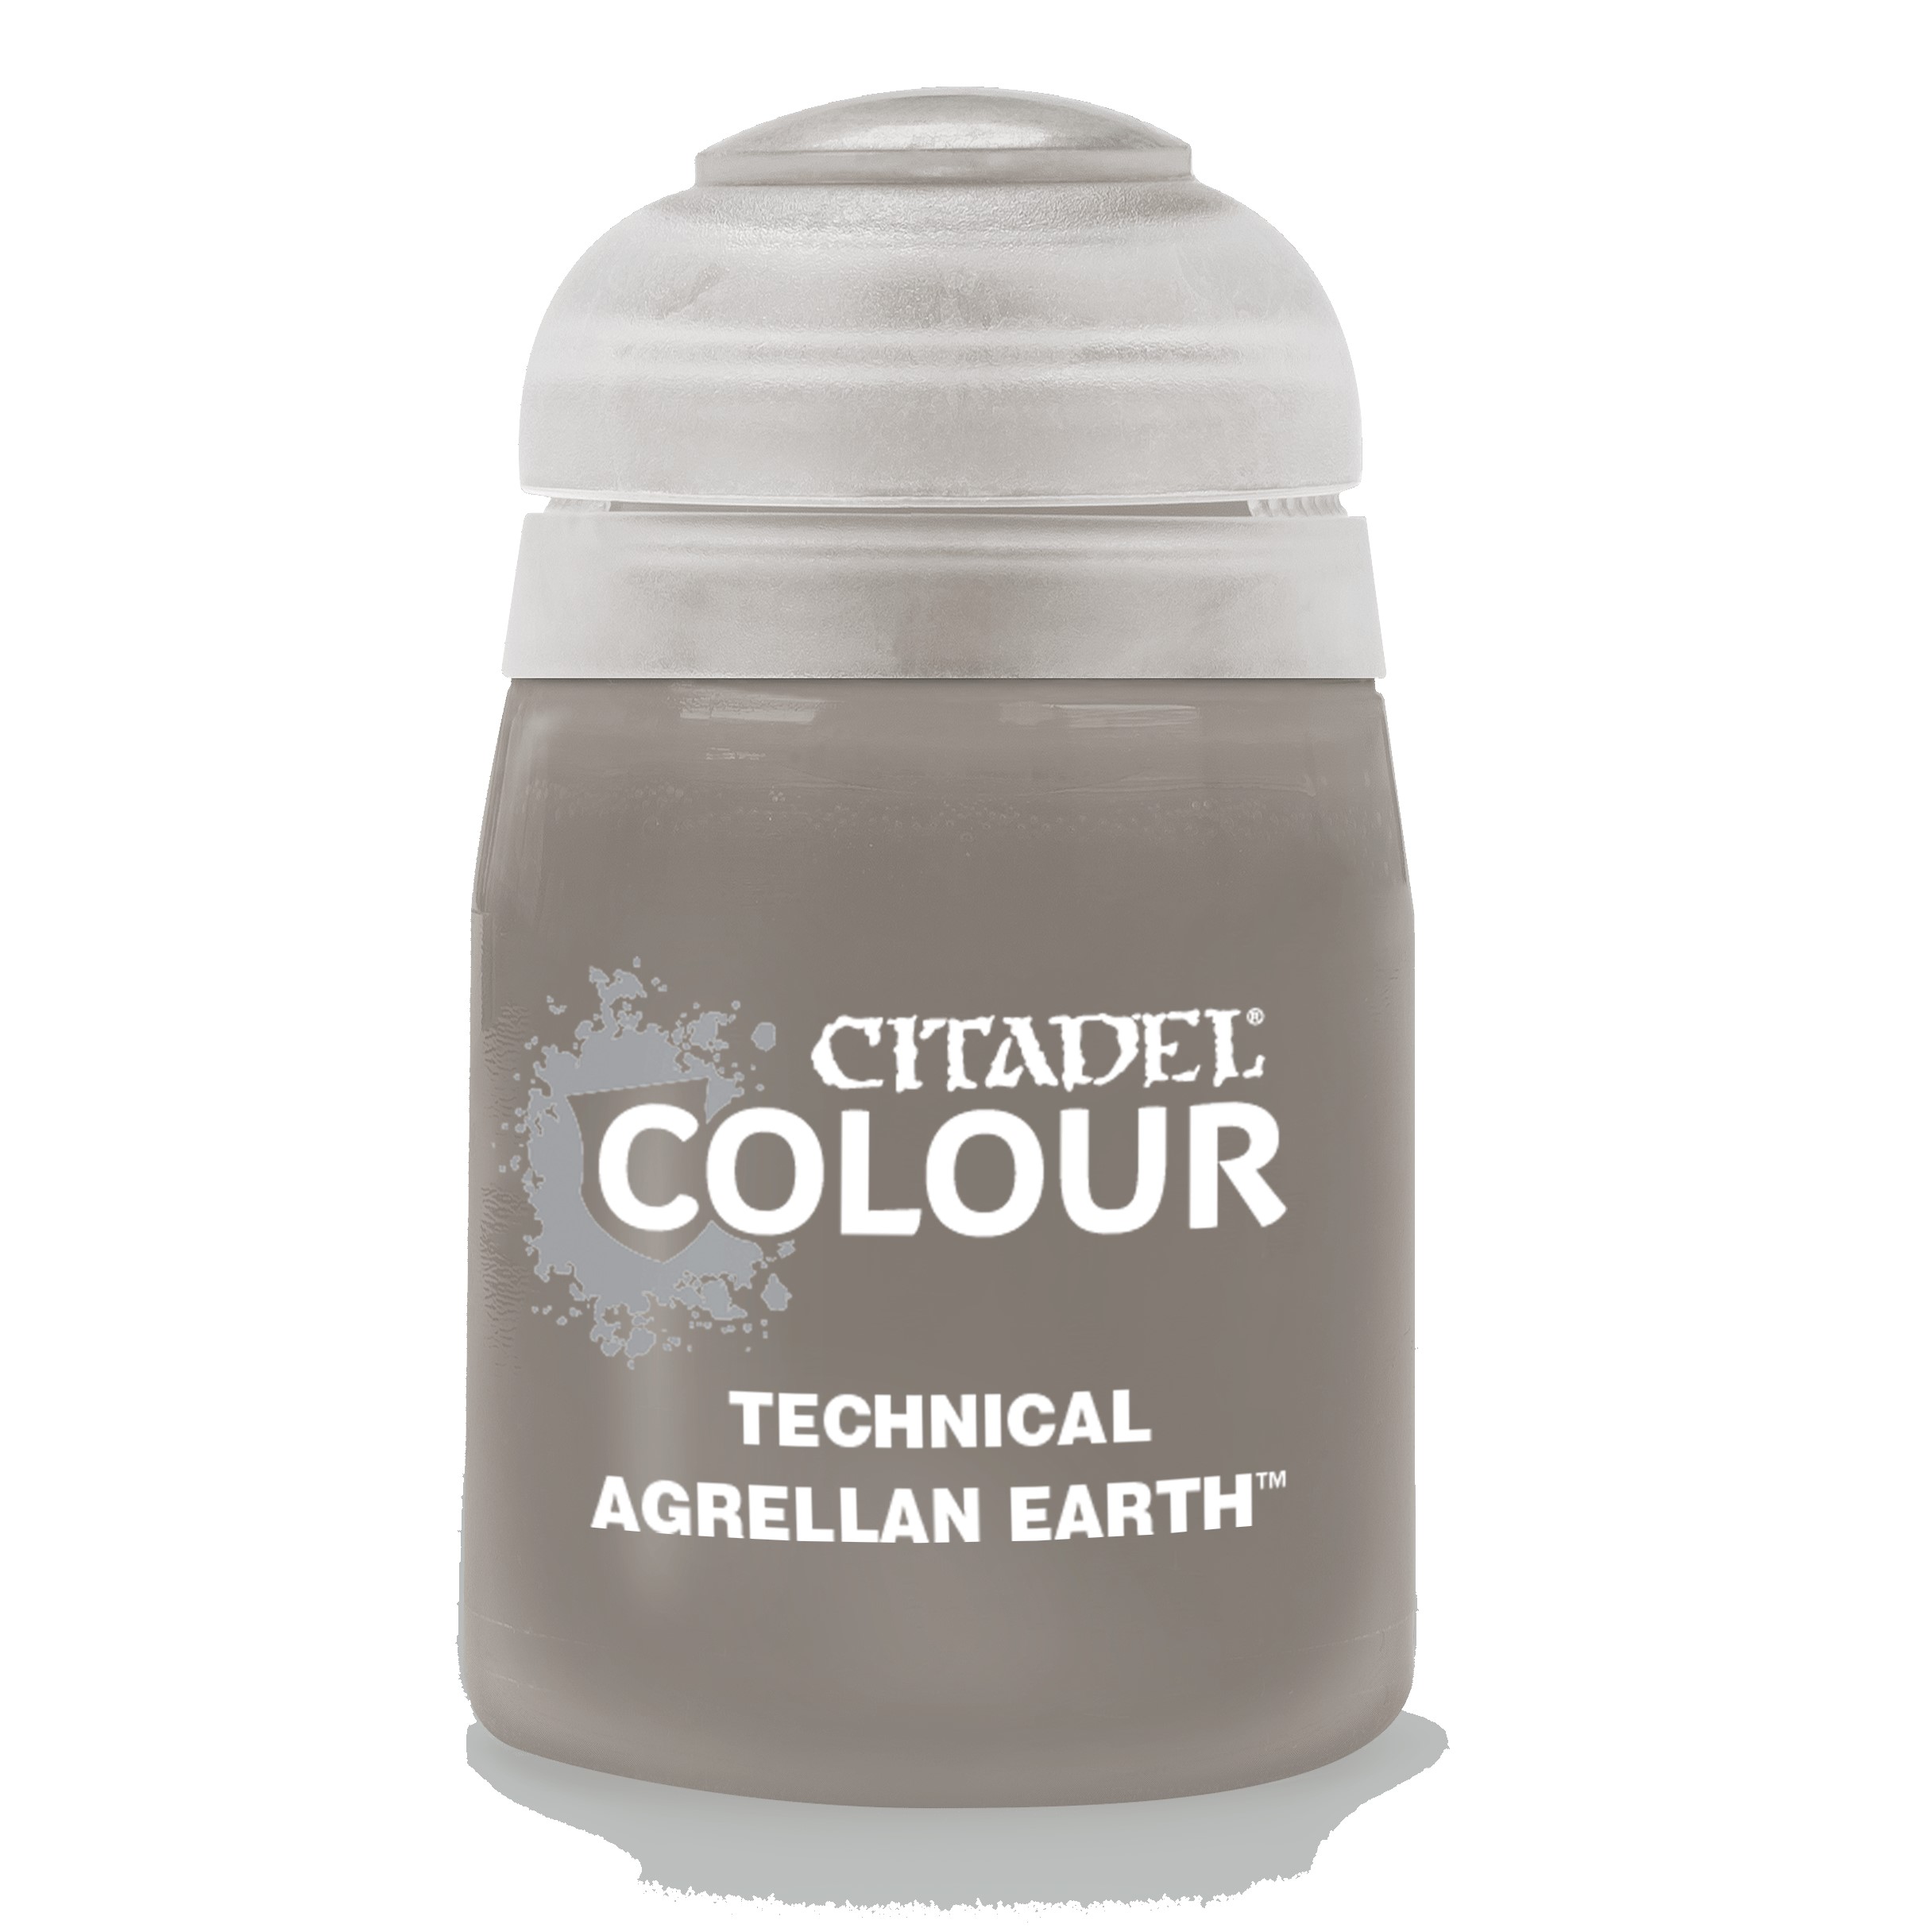 Technical Agrellan Earth - Citadel Colour